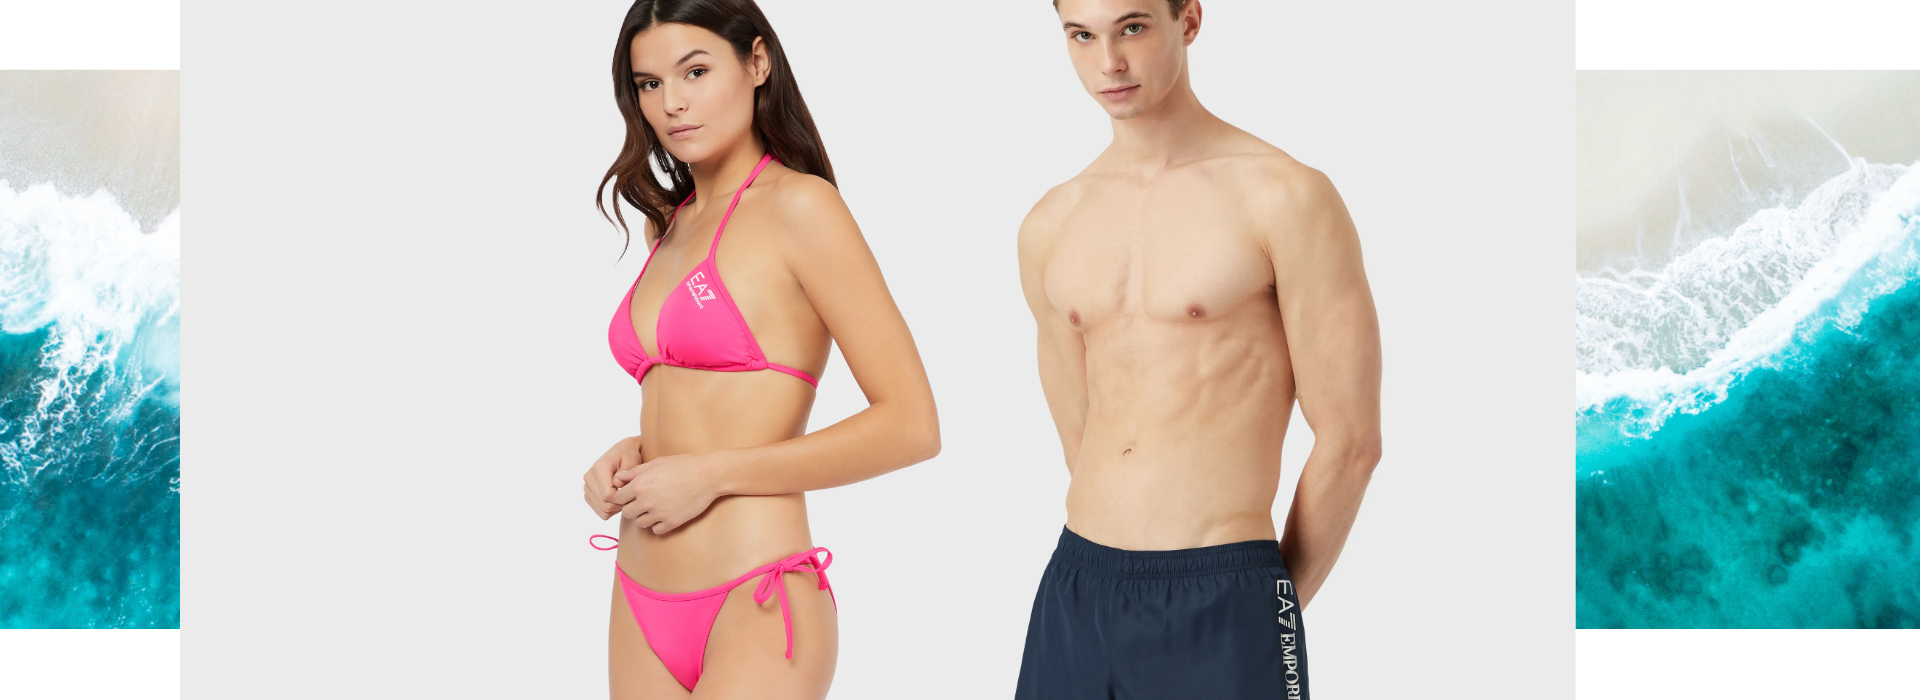 Scopri le nuove collezioni beachwear per uomo, donna e bambino.